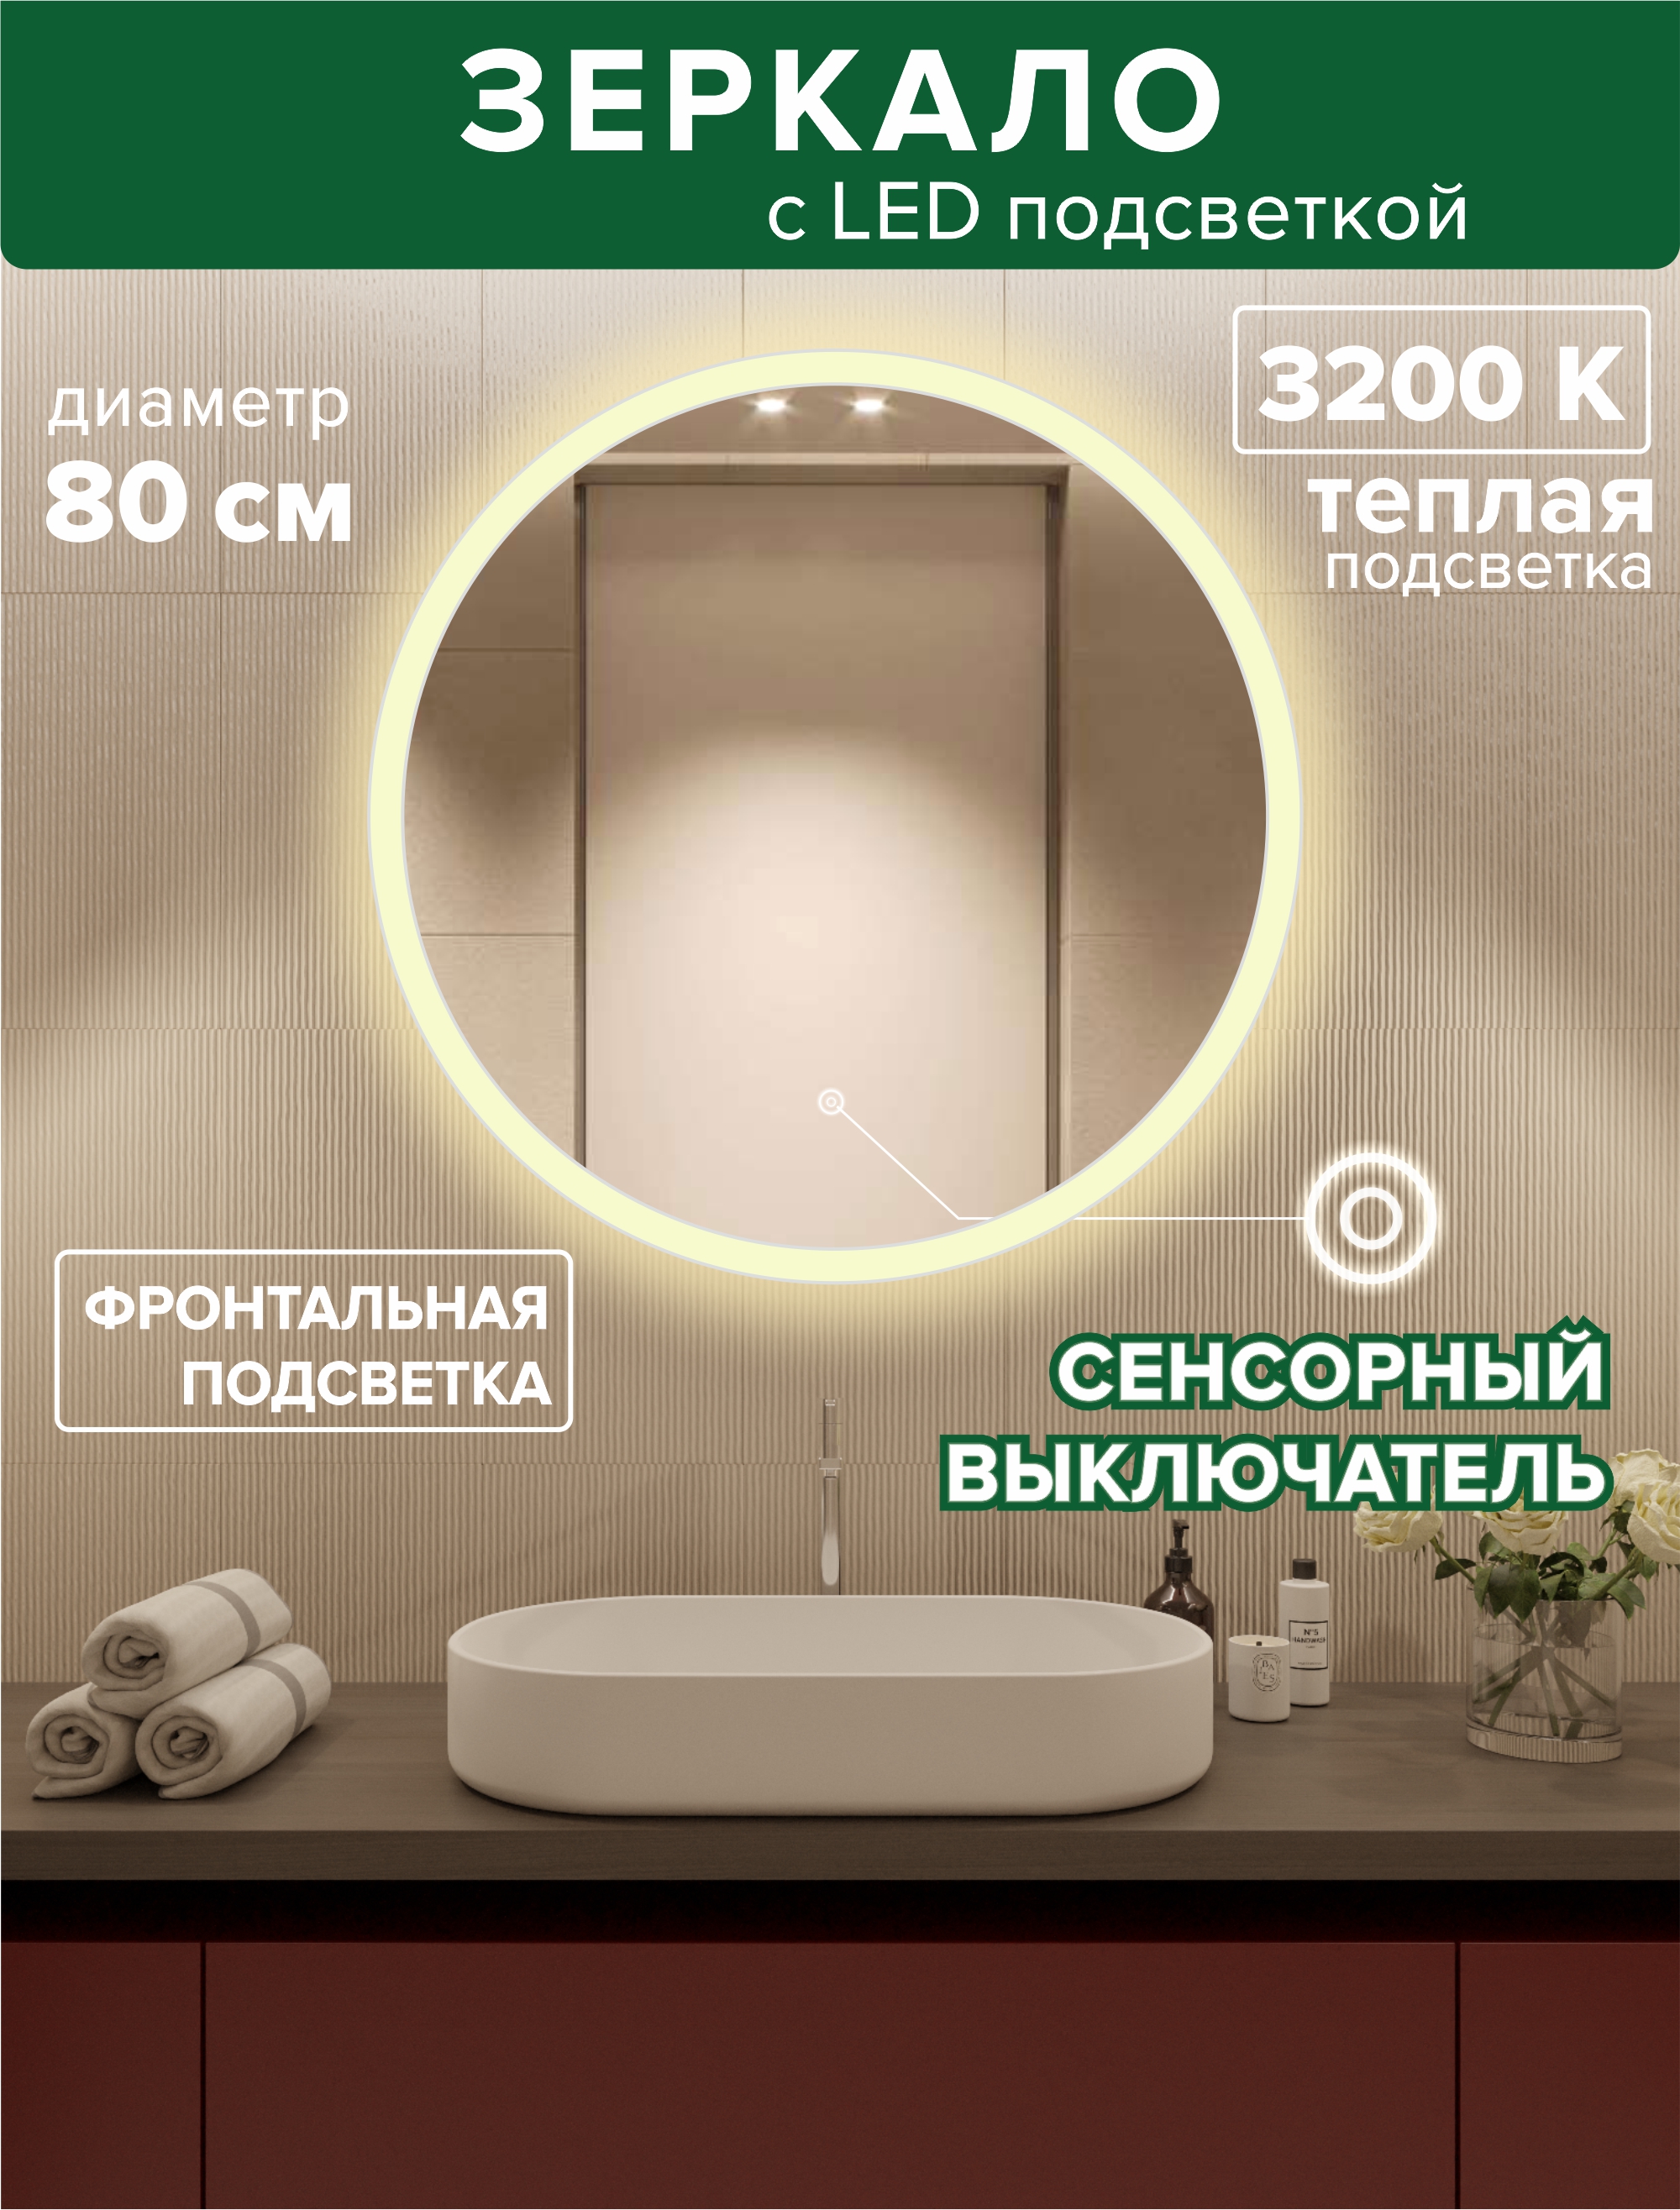 Зеркало для ванной Alfa Mirrors фронтальная теплая подсветка 3200К, круглое 80см, MSvet-8t светодиодная гирлянда rich led 10 м 100 led 24в соединяемая влагозащитный колпачок теплая белая прозрачный провод rl s10c 24v ct ww